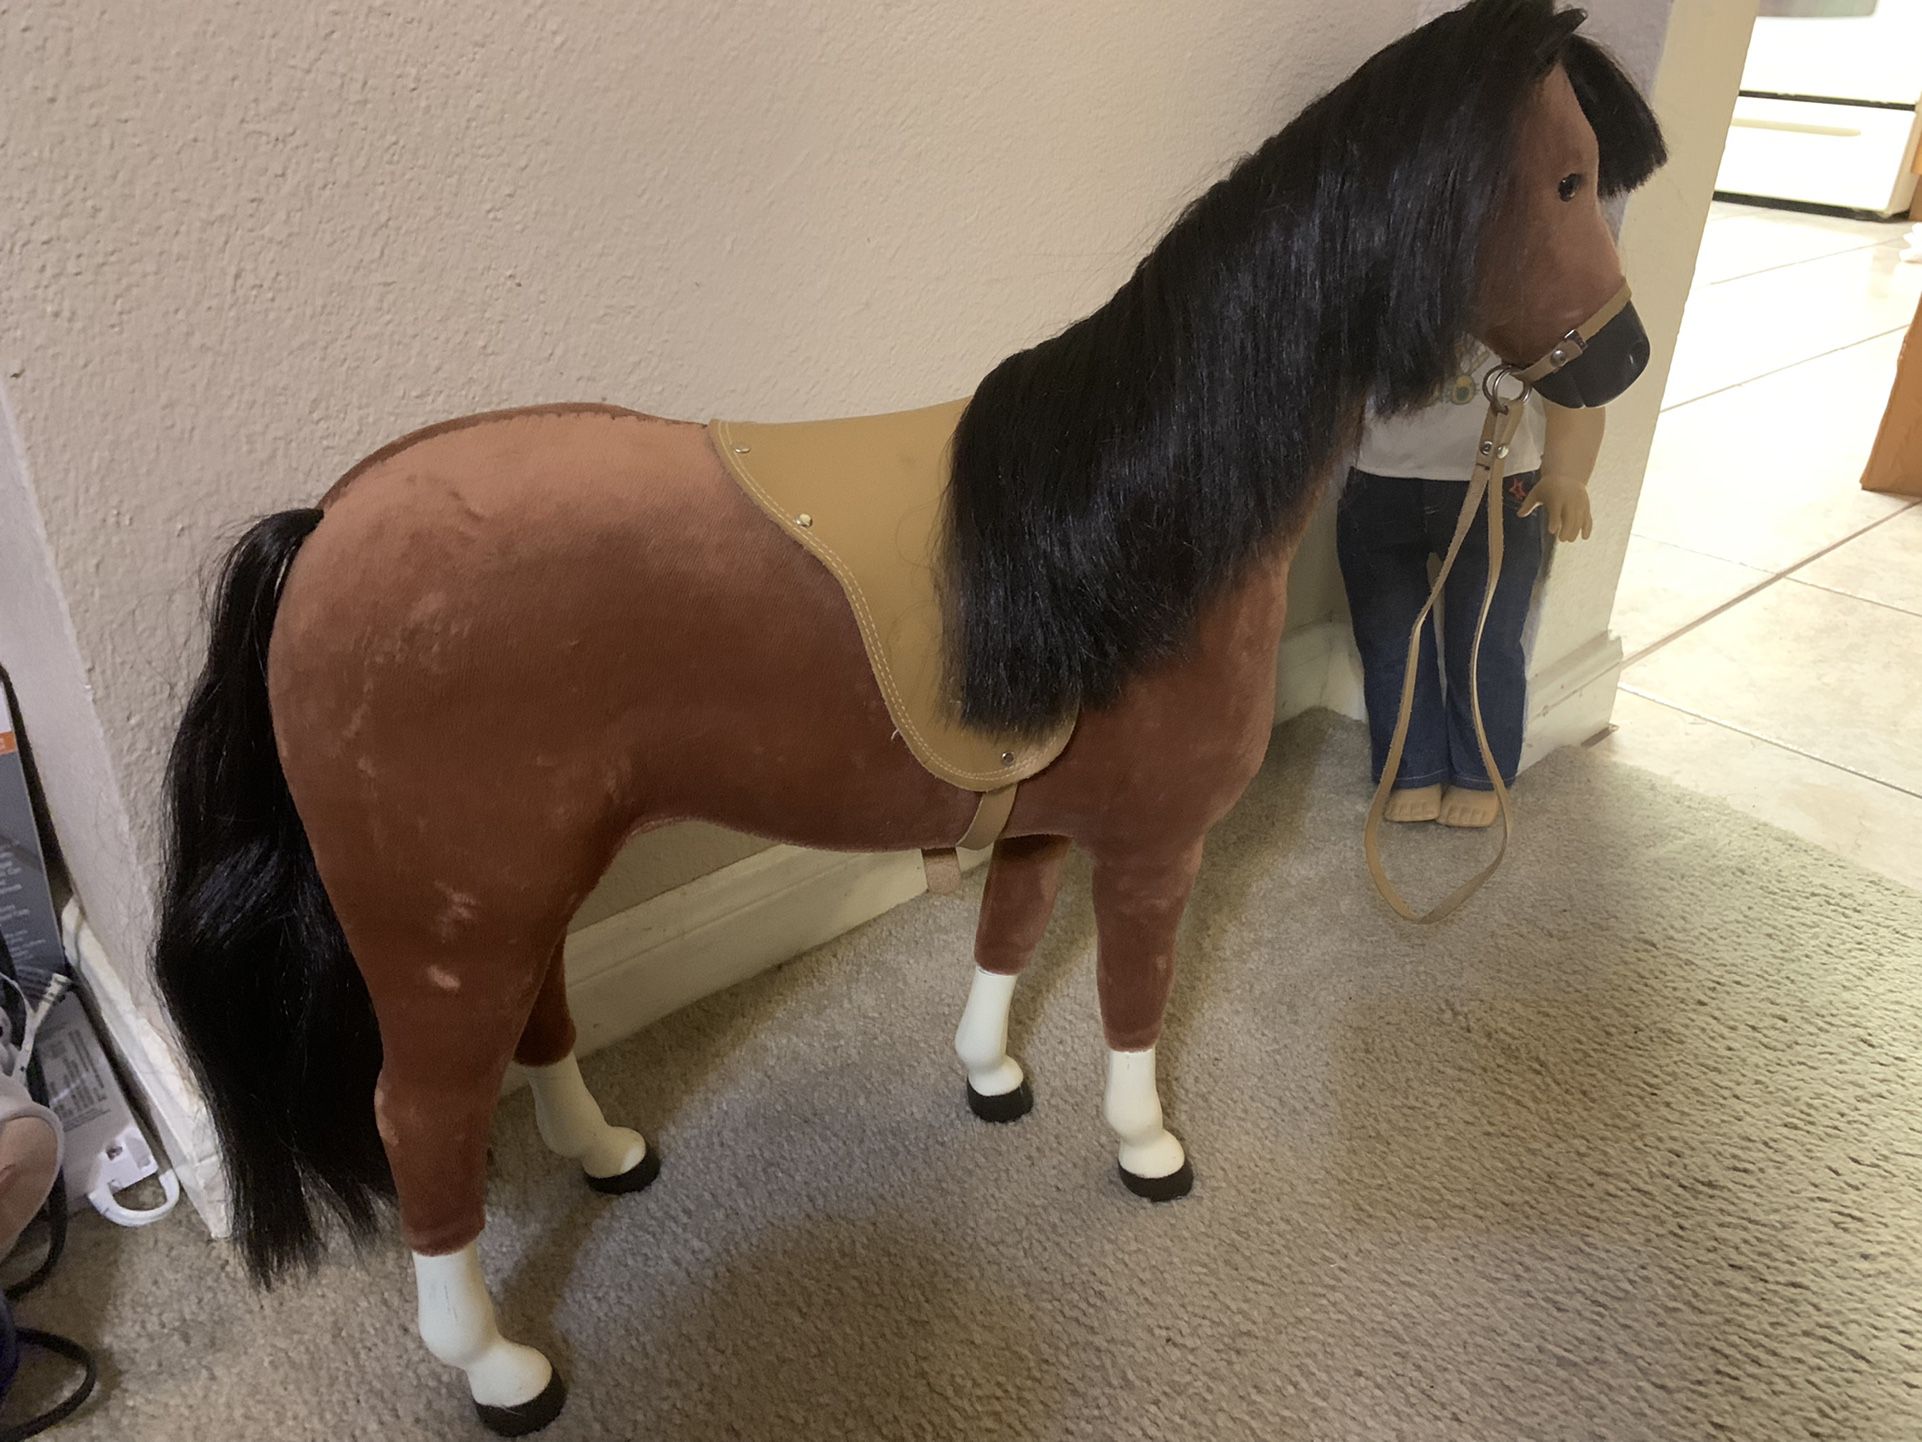 American Girl Horse & KS Doll